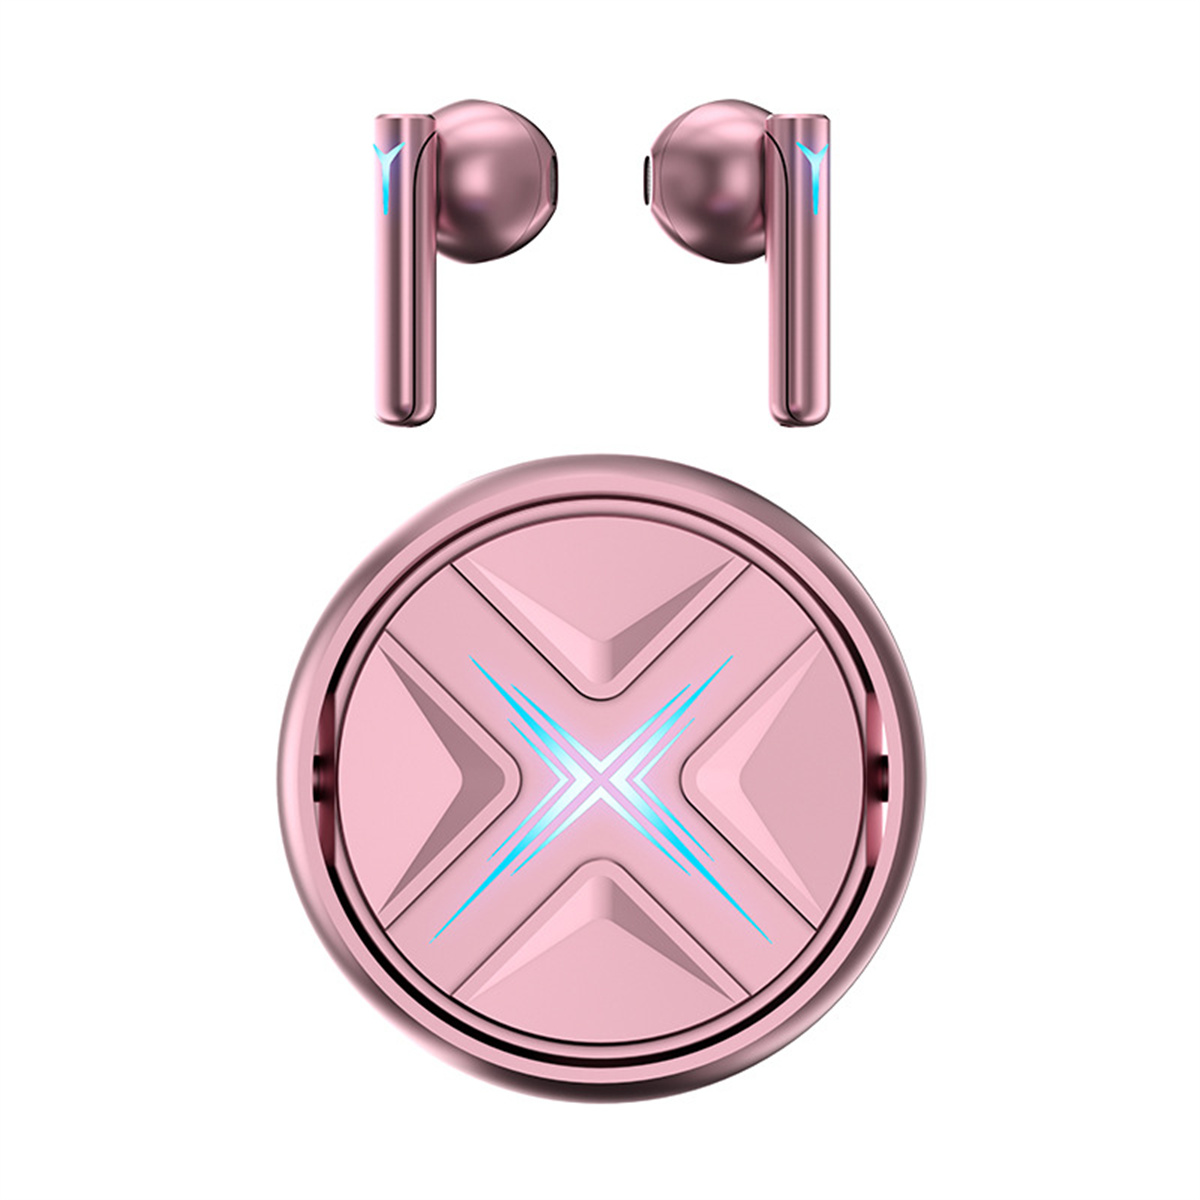 SYNTEK Bluetooth-Kopfhörer Rosa True In-Ear Kopfhörer, In-ear Noise Active Bluetooth Cancelling Bluetooth Wireless Kopfhörer Rosa